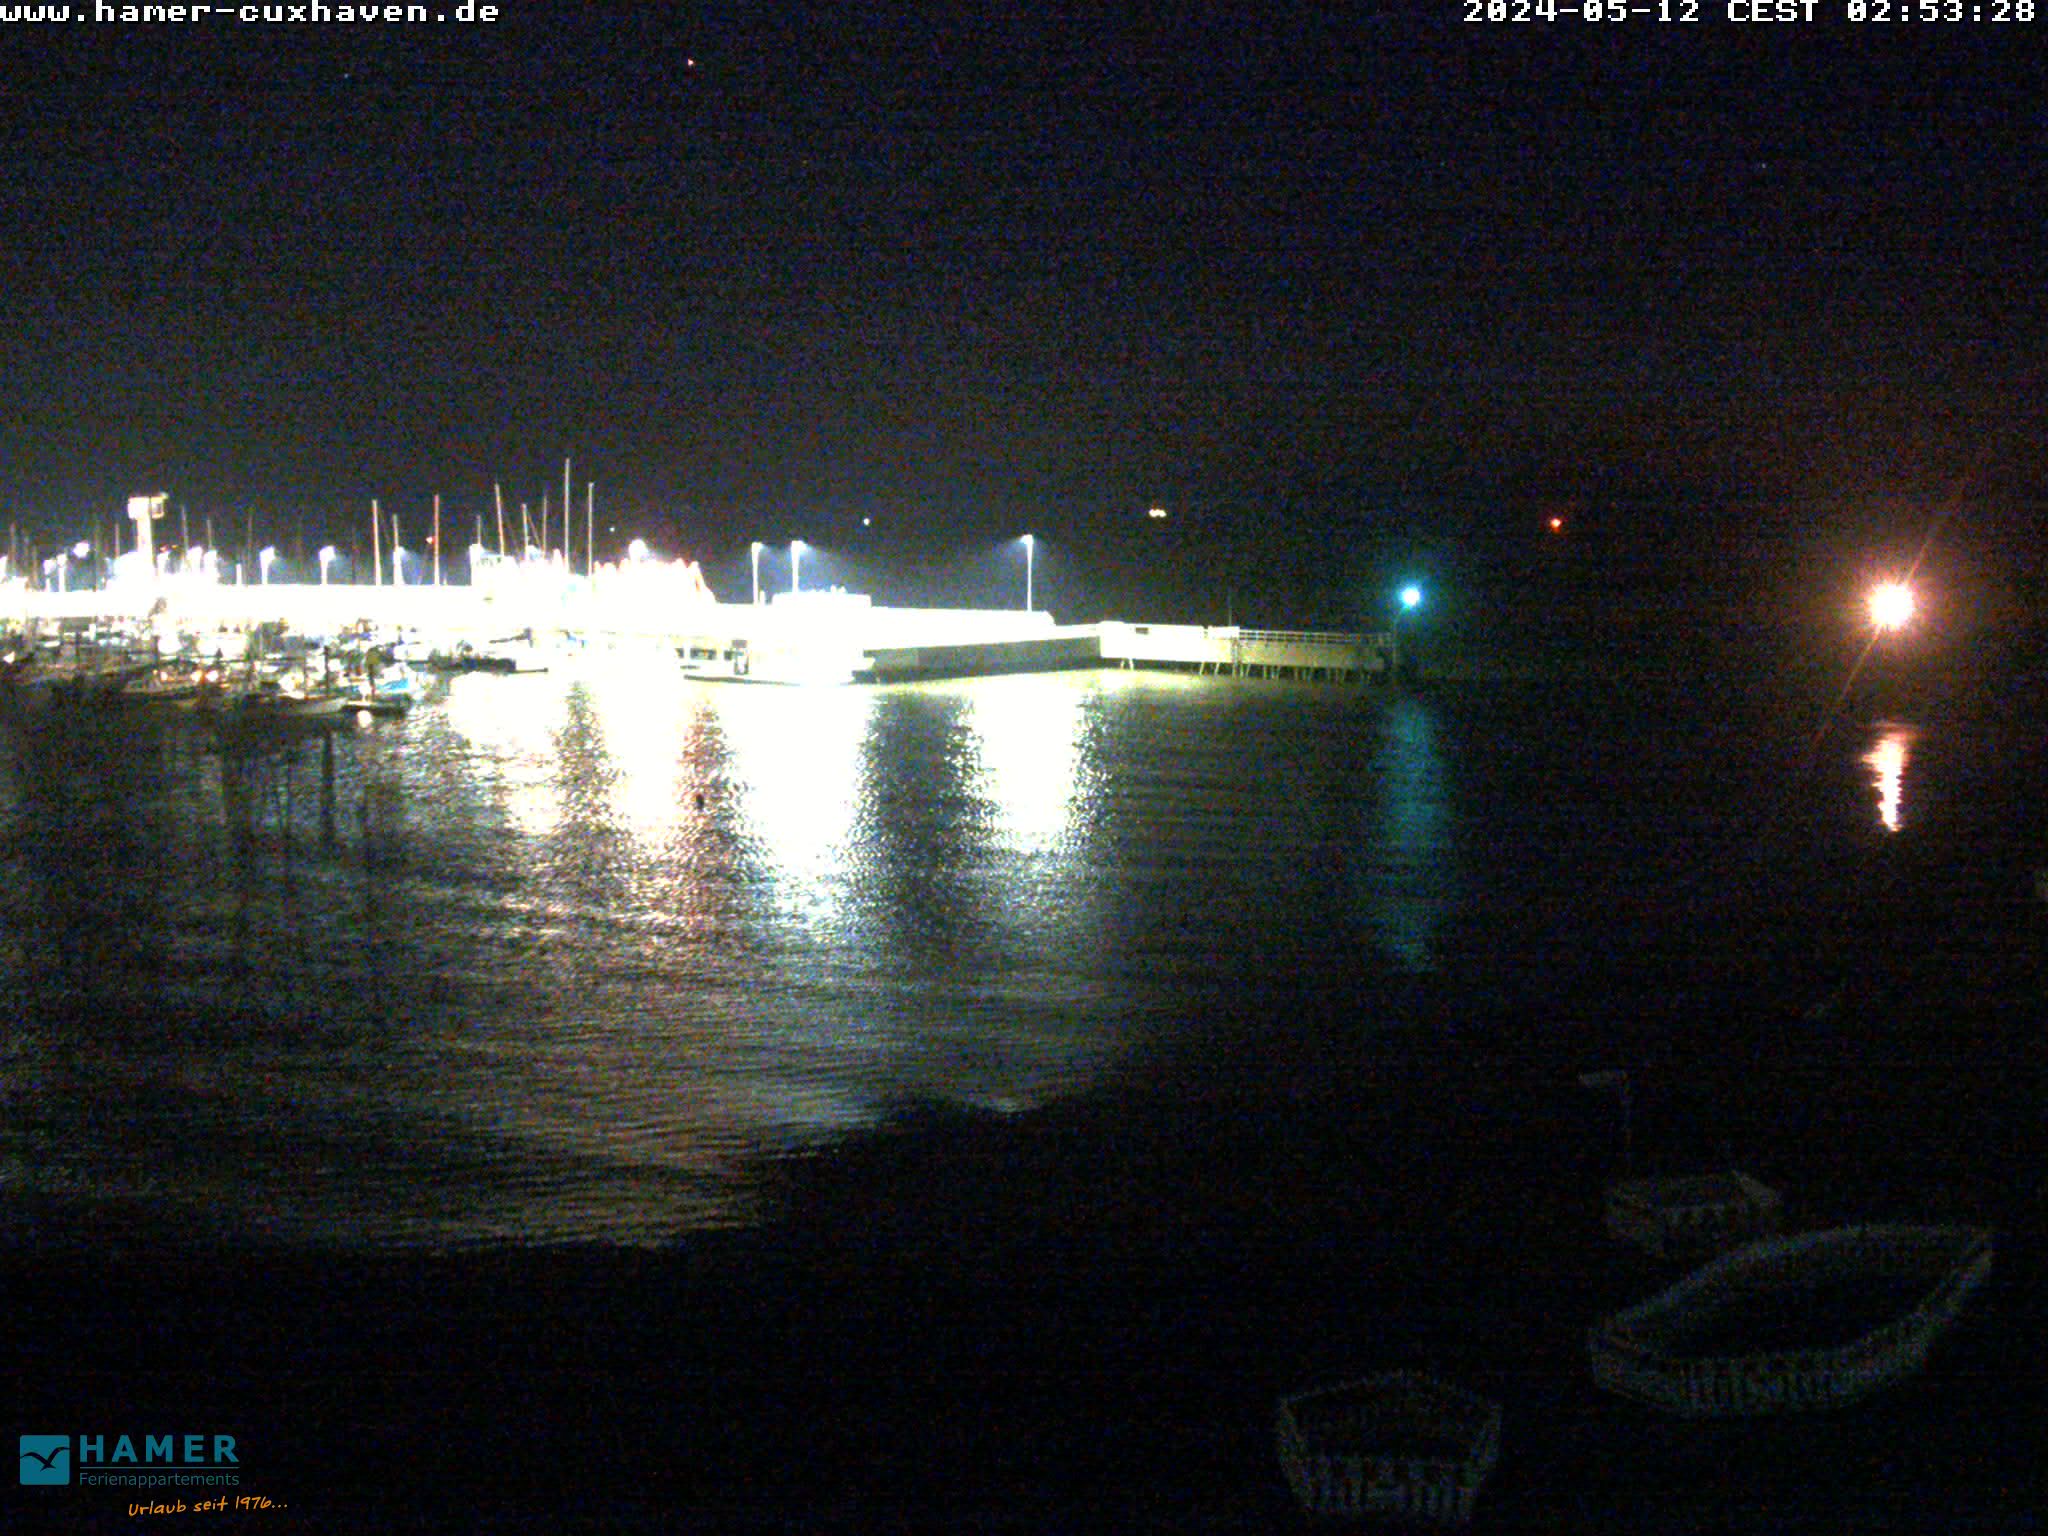 Cuxhaven Do. 02:55